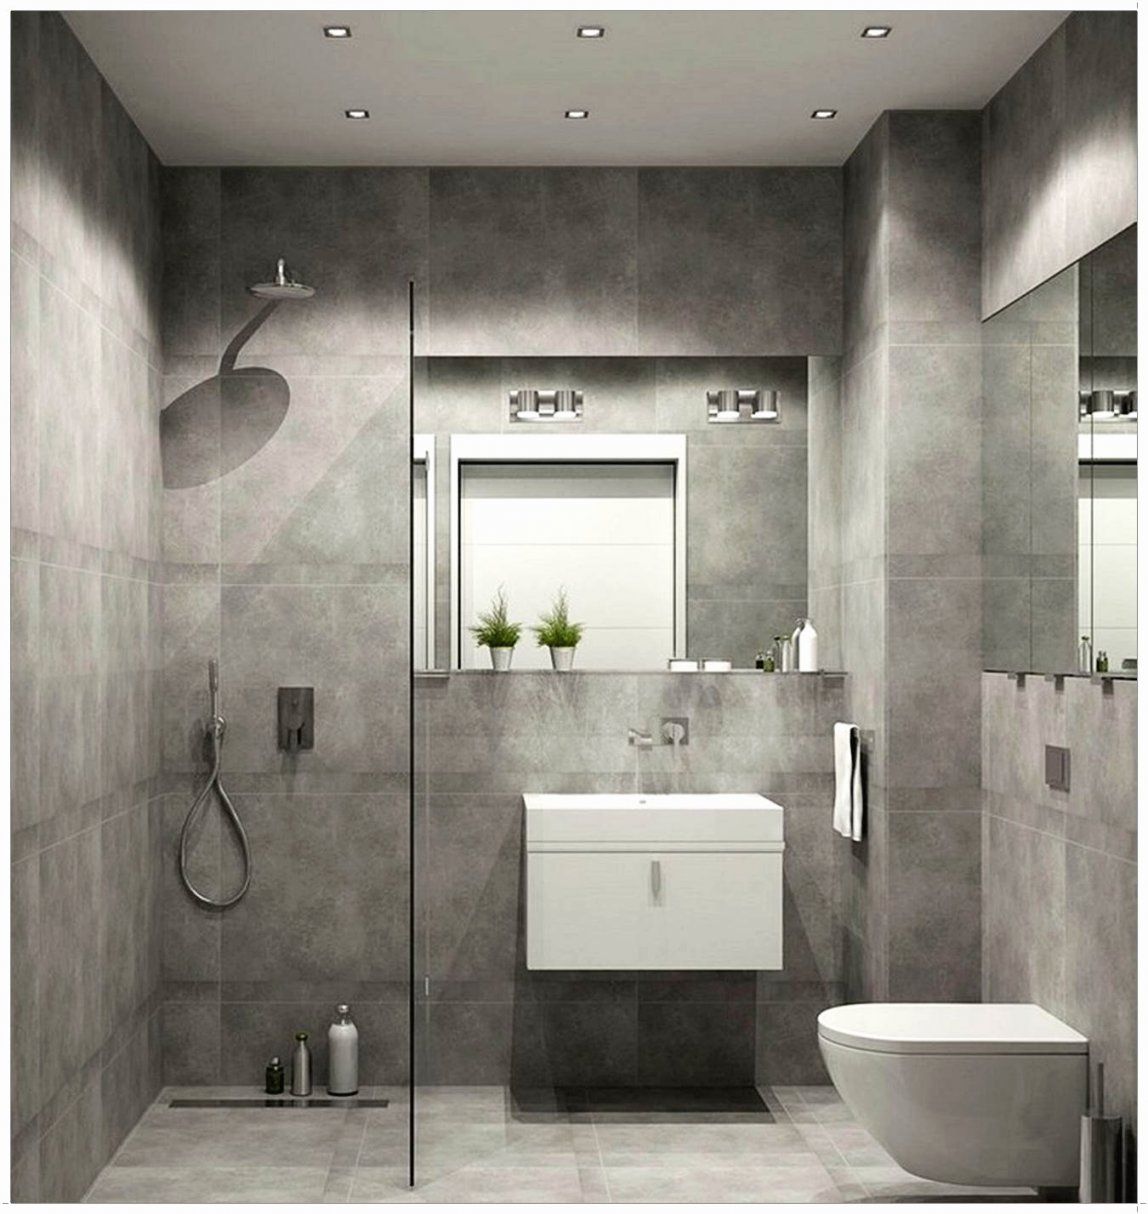 Badezimmer 8 Qm Planen Fresh Badezimmer 4 Qm Ideen Design von Badezimmer 4 Qm Ideen Photo